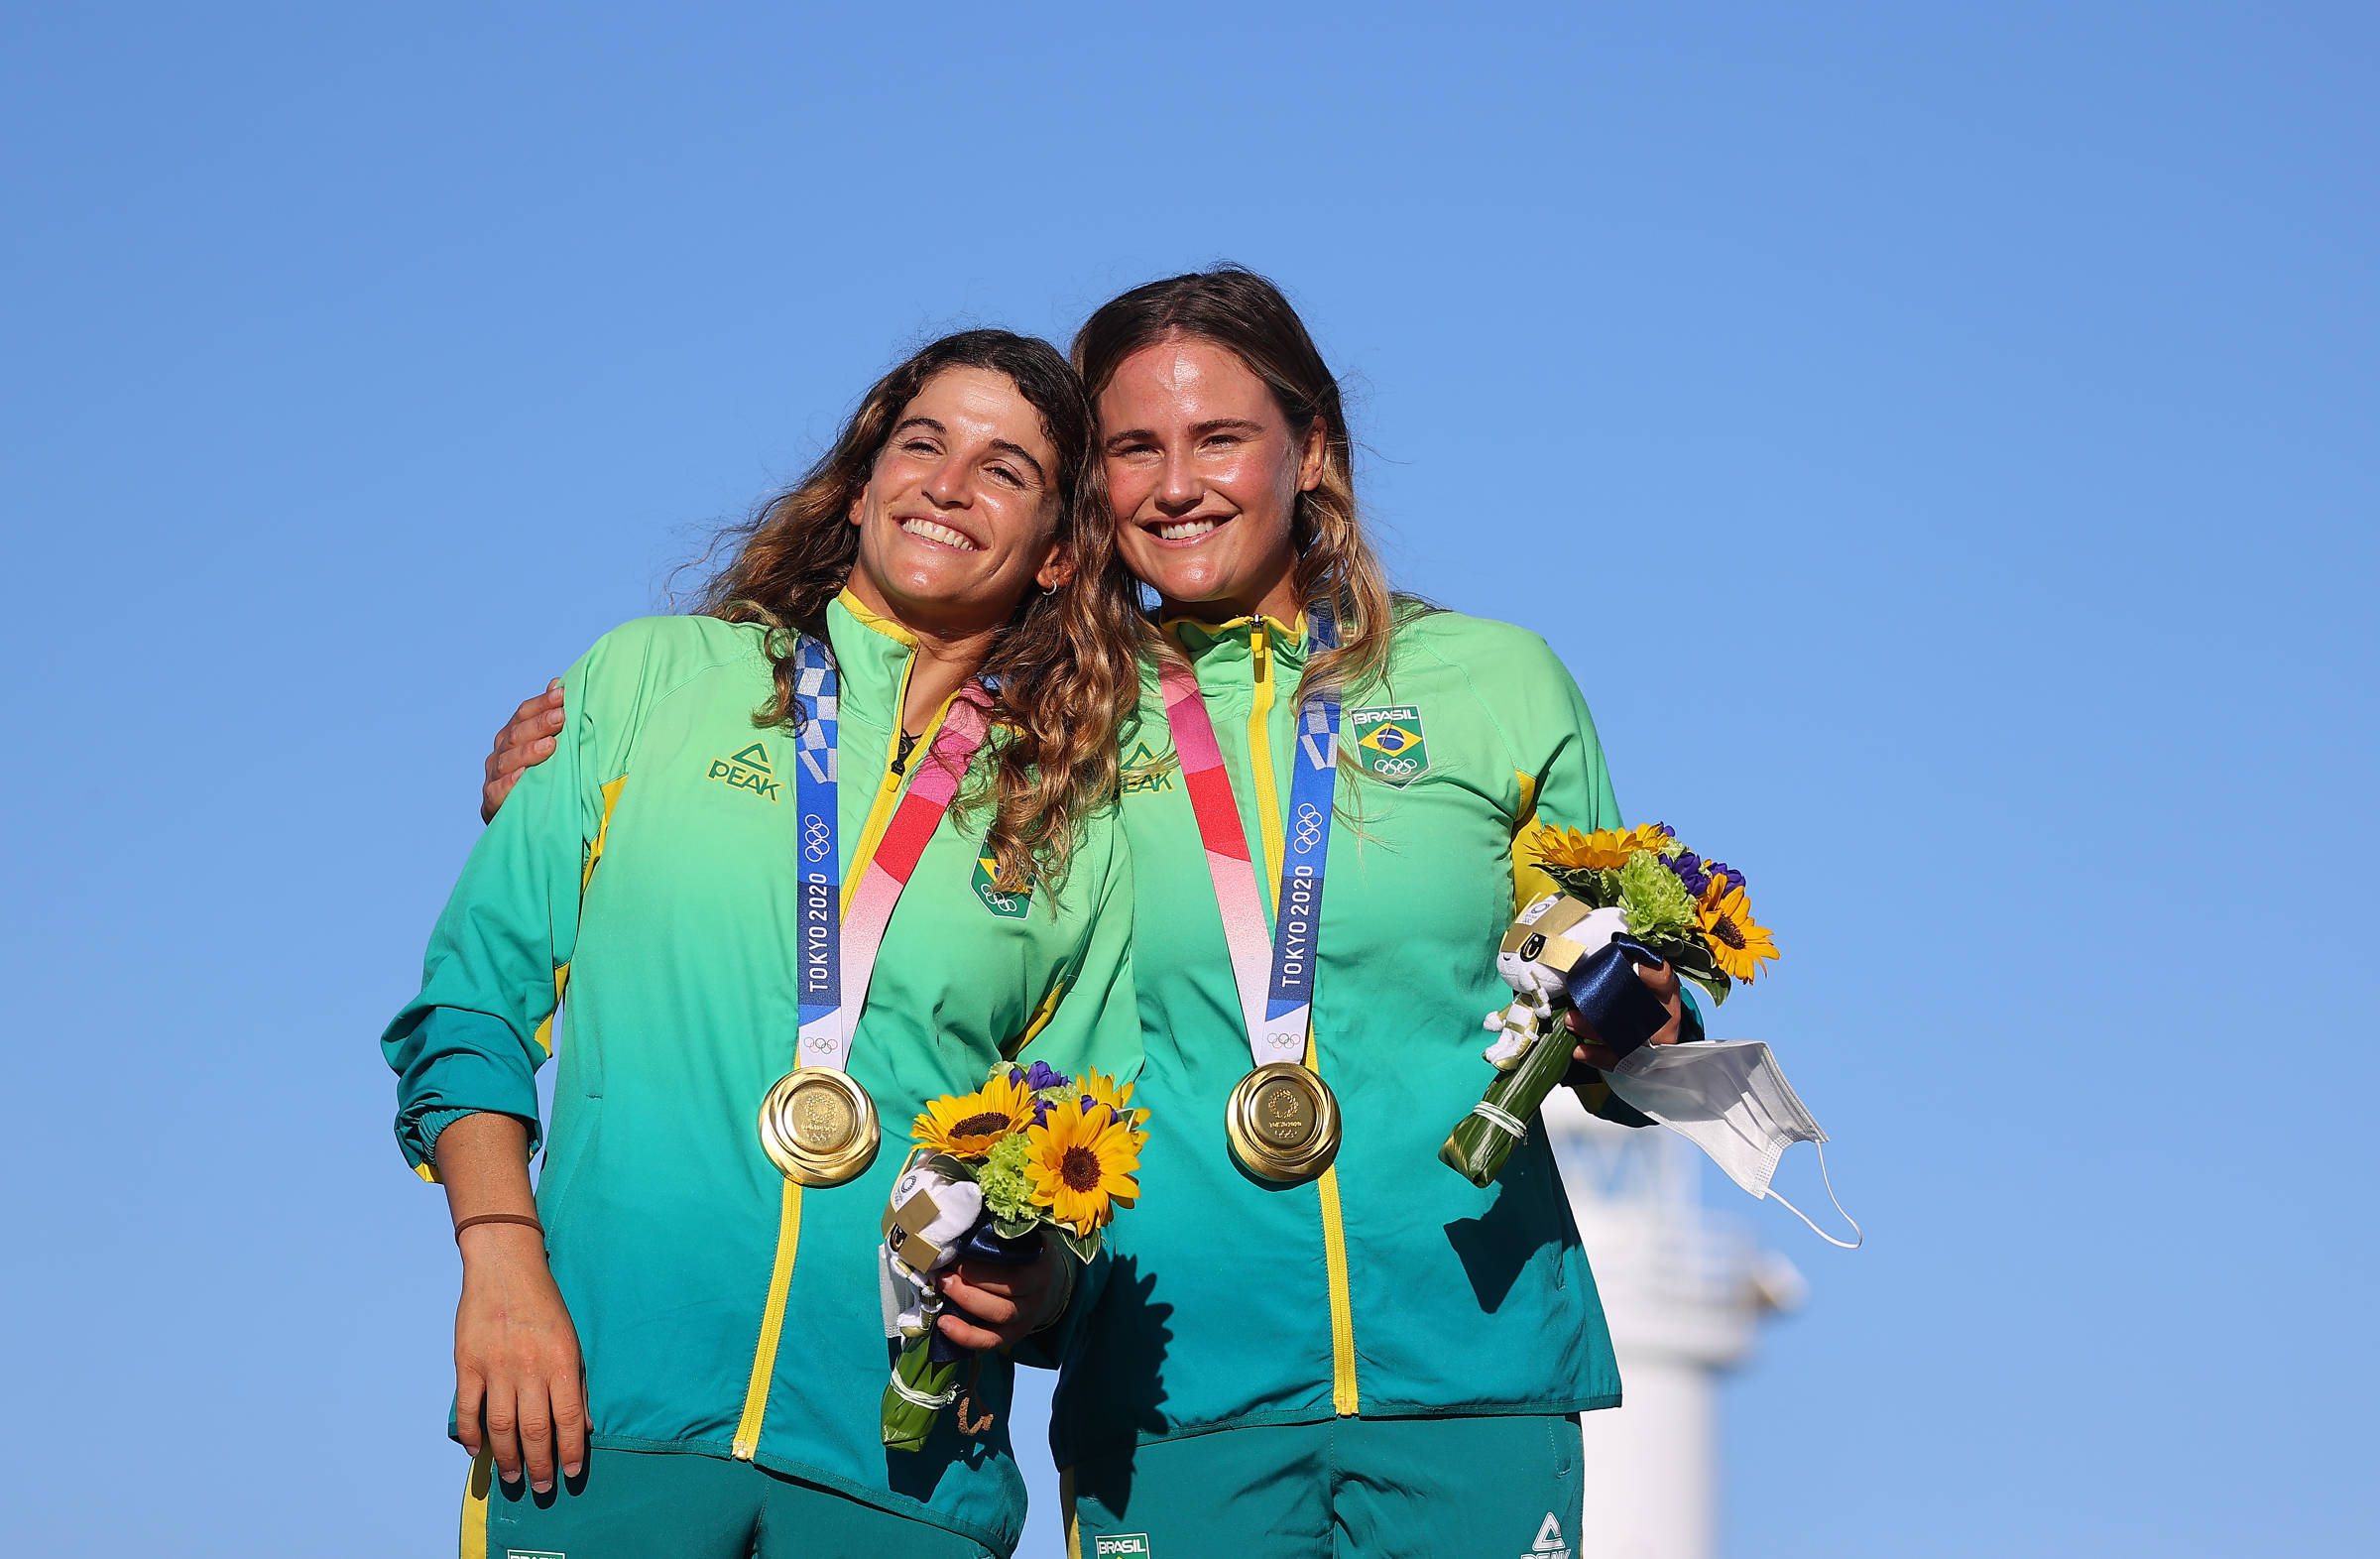 Ana e Artur conquistam 5 medalhas cada em Limeira - O Popular MM